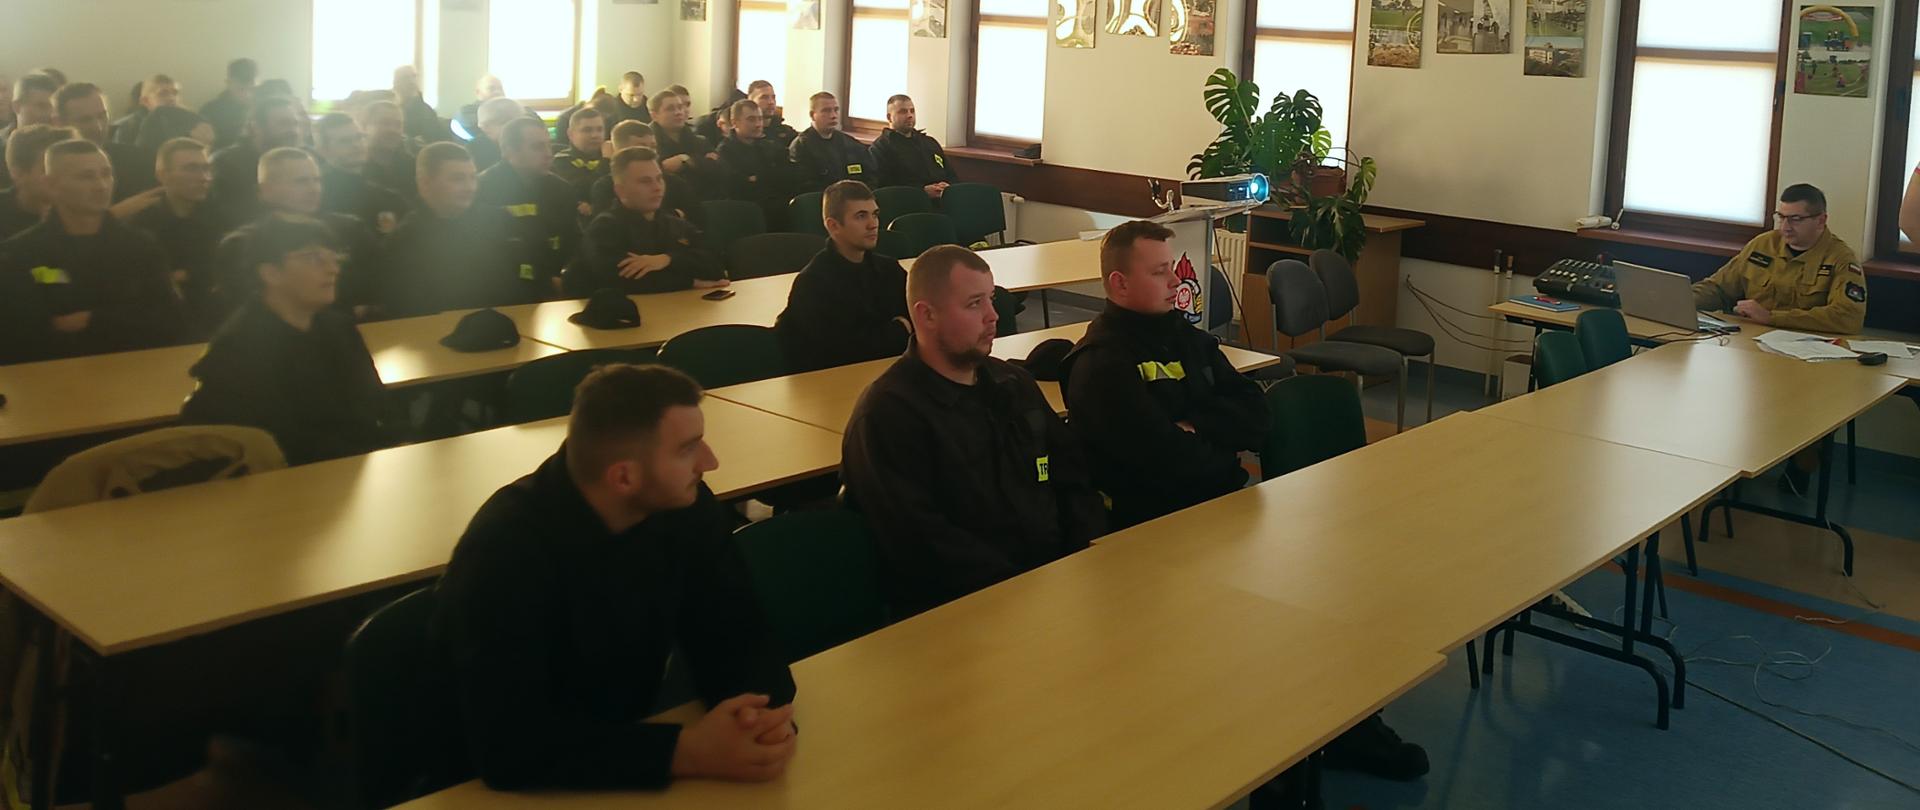 Szkolenie sokołowskich i węgrowskich druhów z zakresu współdziałania z LRP - w sali wykładowej komendy trwa szkolenie